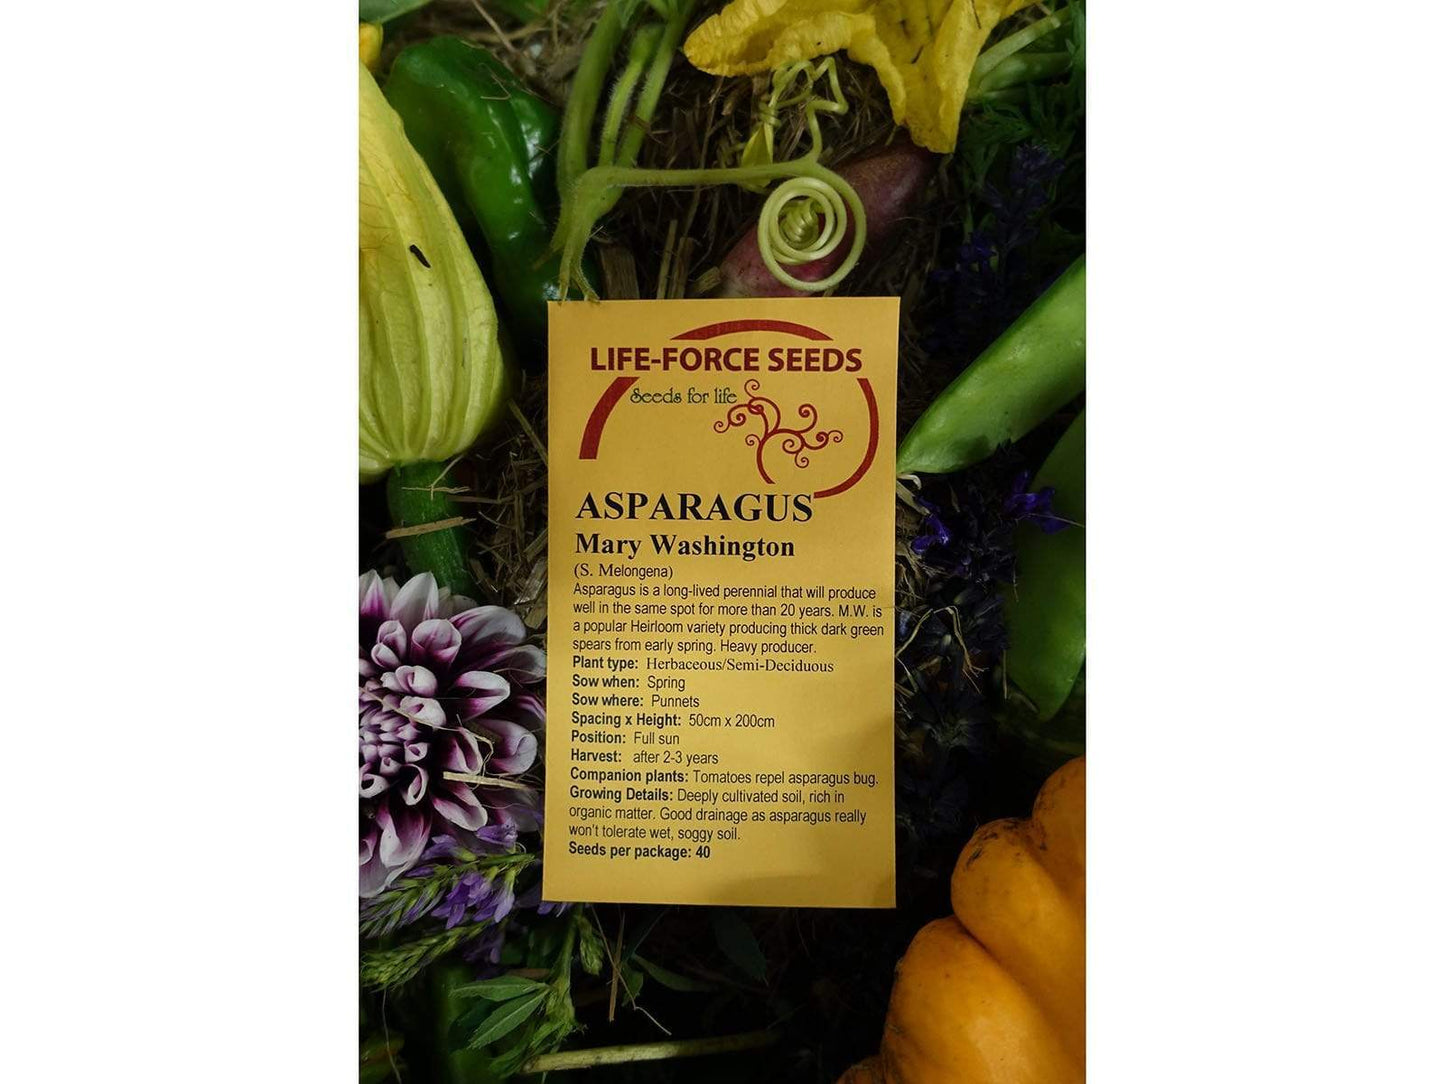 Life Force Seeds - Vegetables